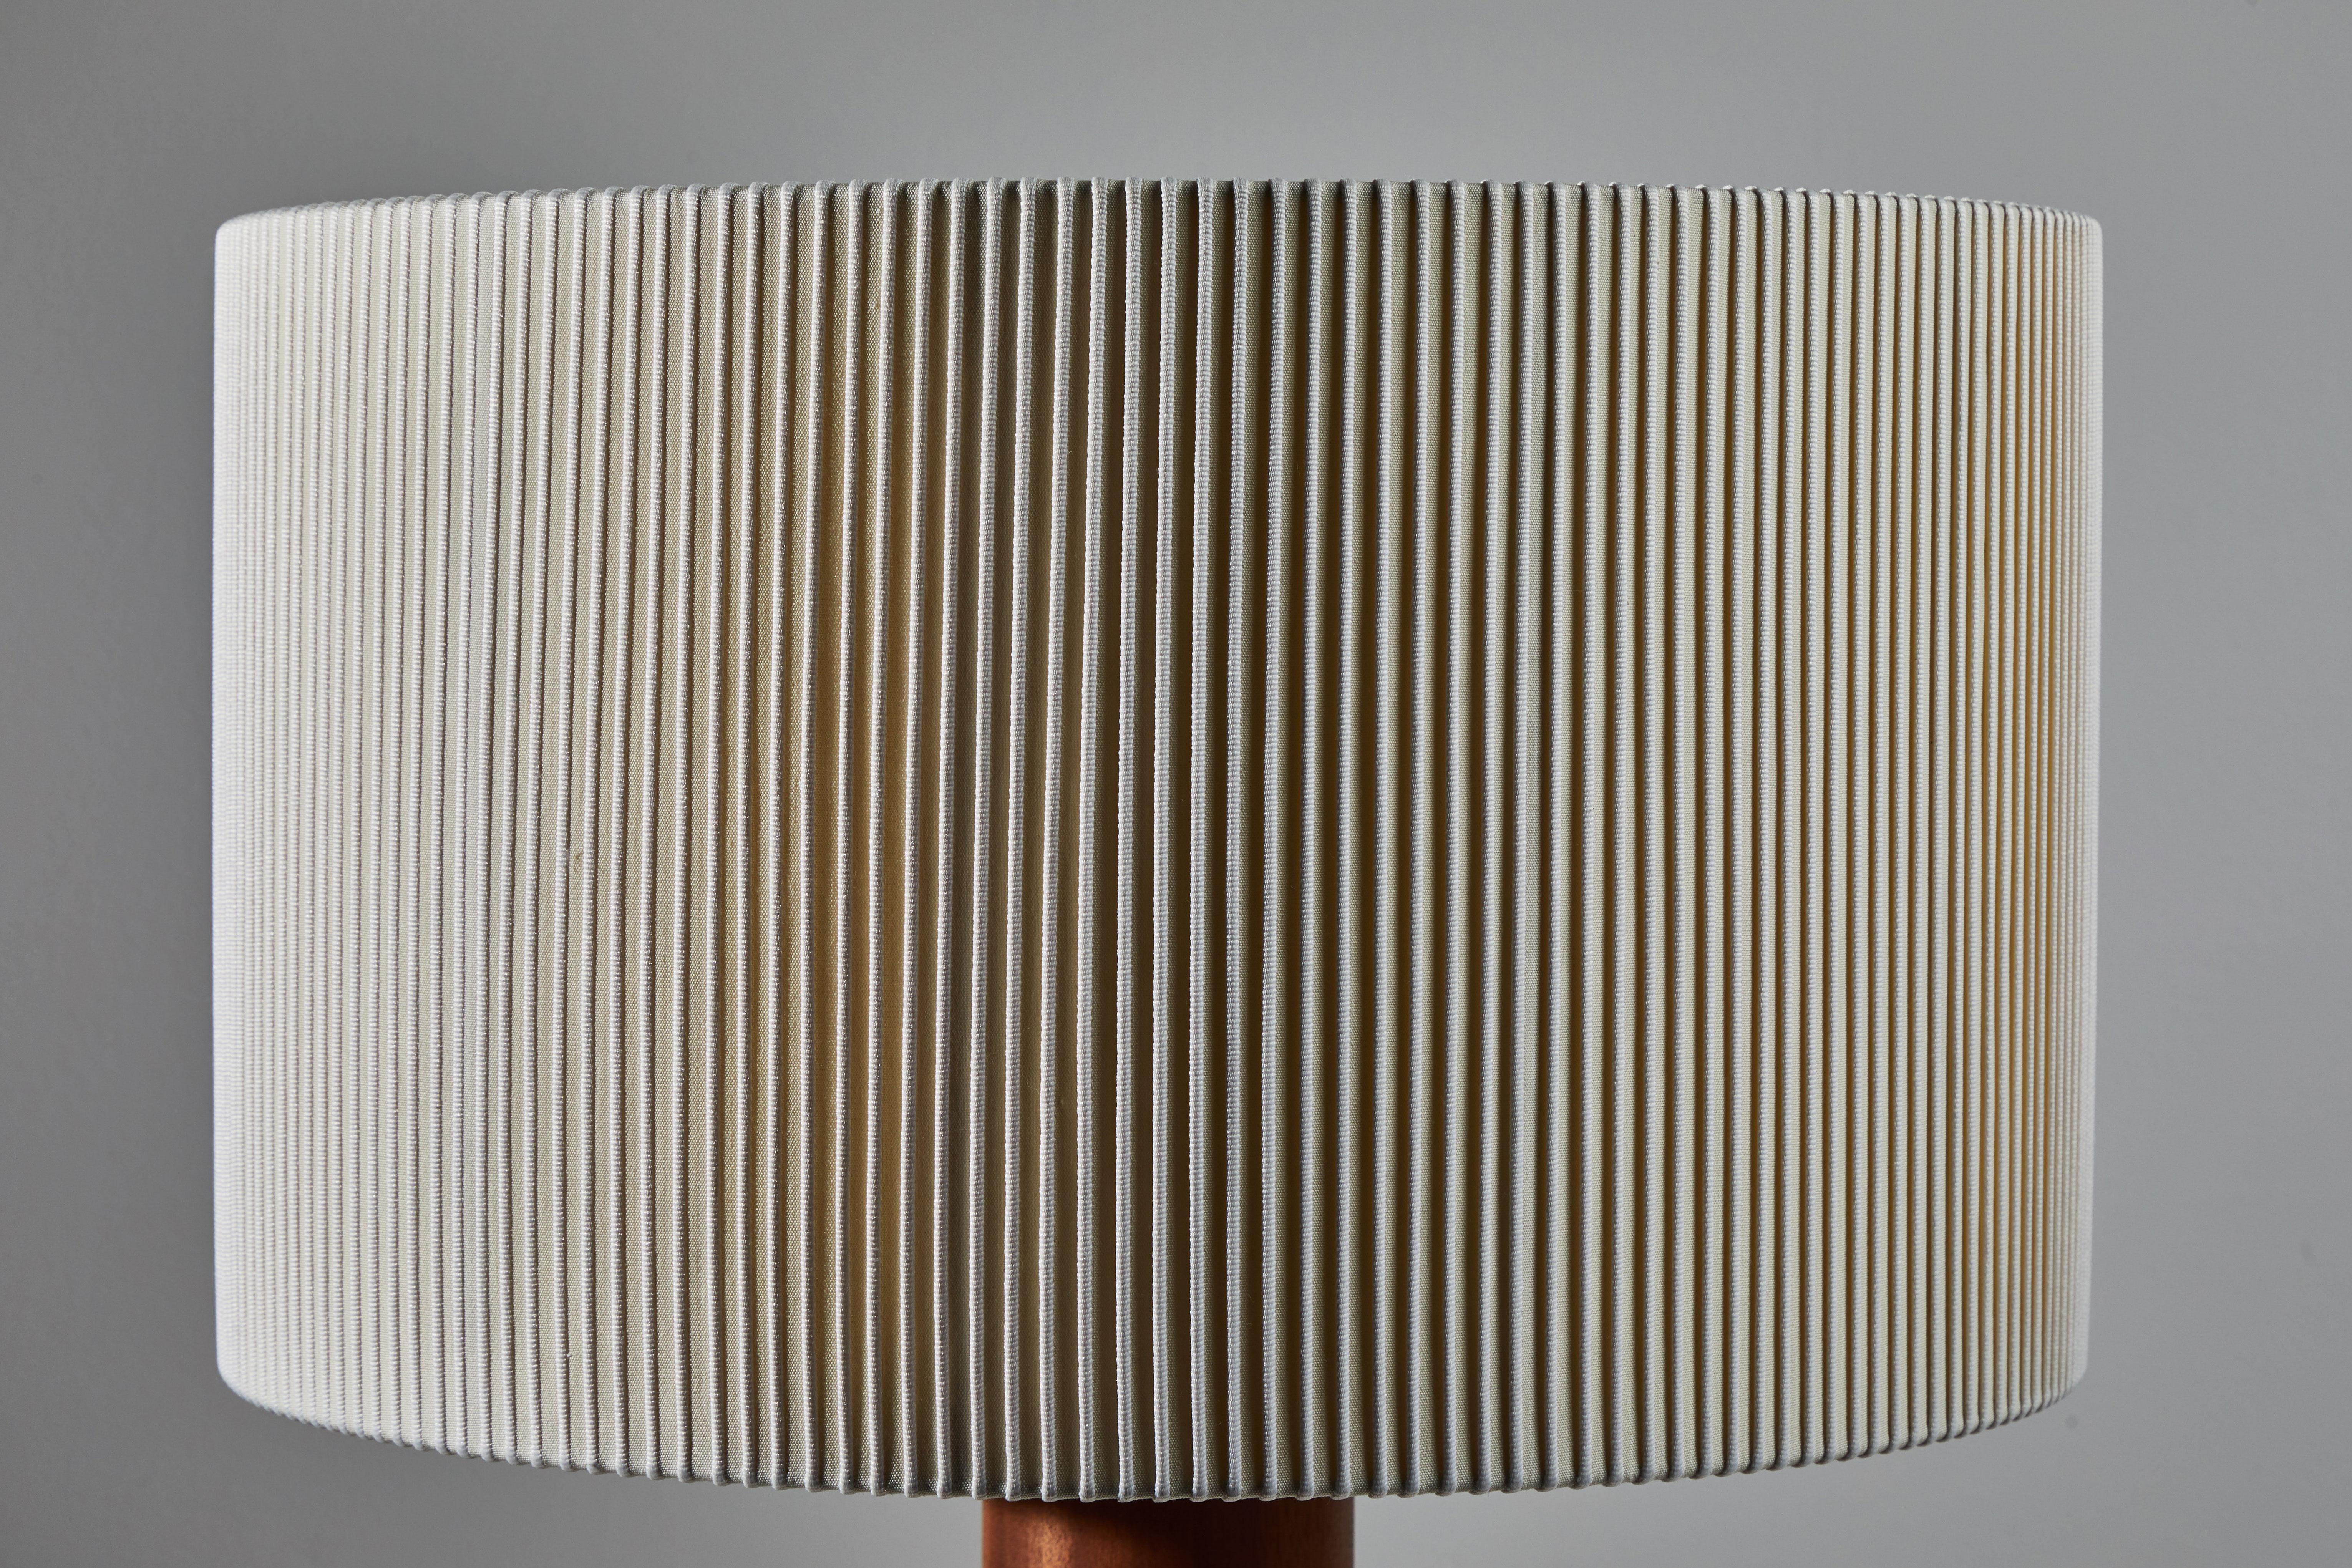 Spanish Moragas Table Lamp by Antoni De Moragas for Santa & Cole